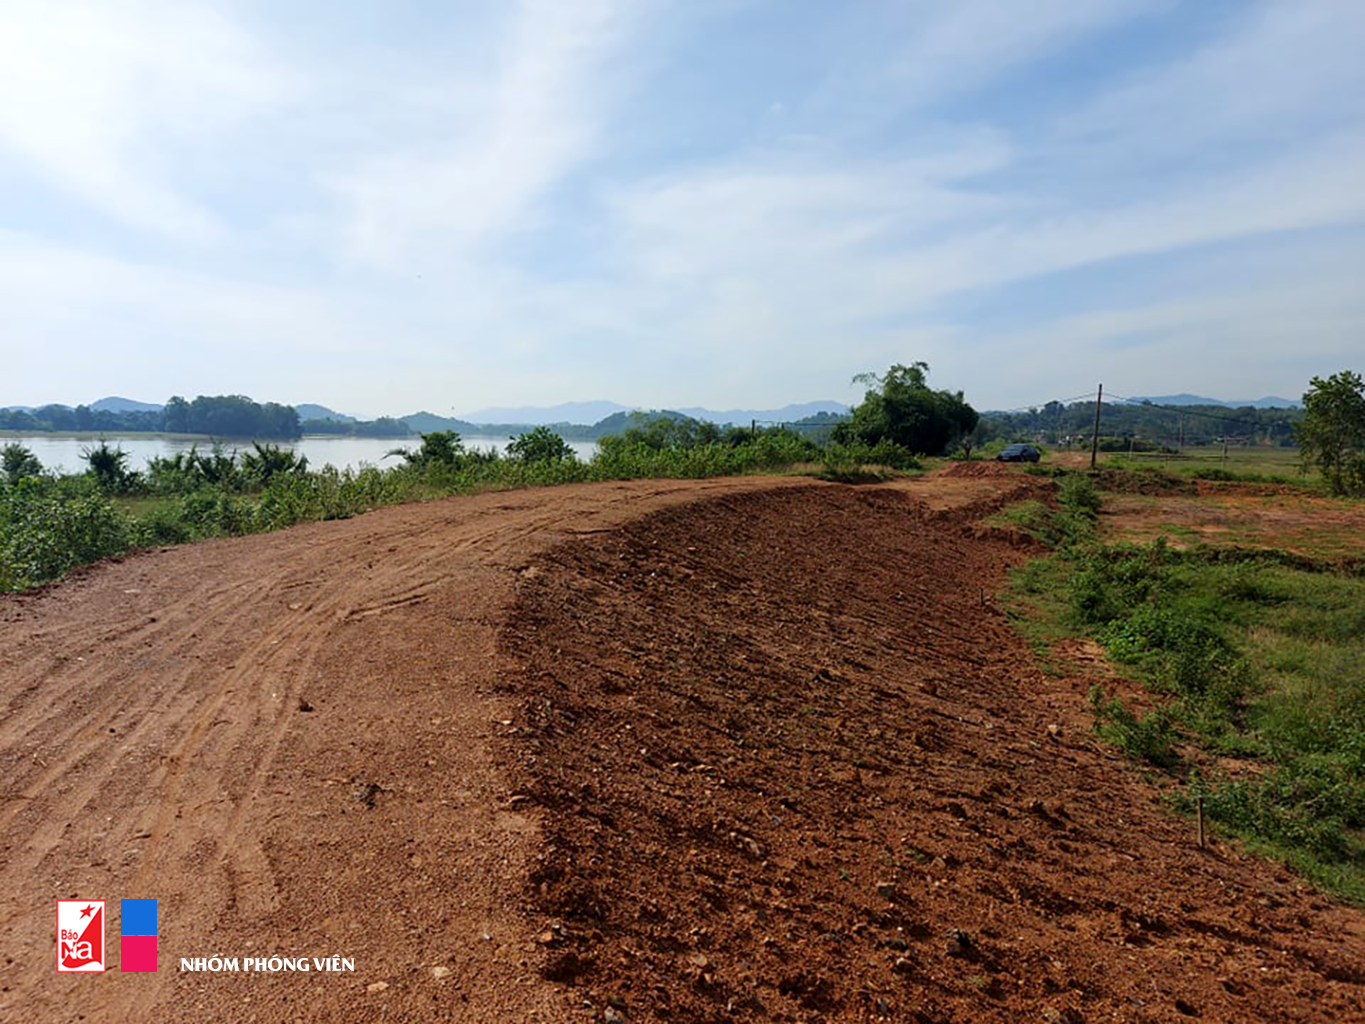 Đê sông Trai, đoạn xã Thanh Thịnh giai đoạn 2 chưa hoàn thiện, trong khi phần giai đoạn 3 có quyết định từ cuối tháng 6/2020 đến nay nhưng chưa được thực hiện.